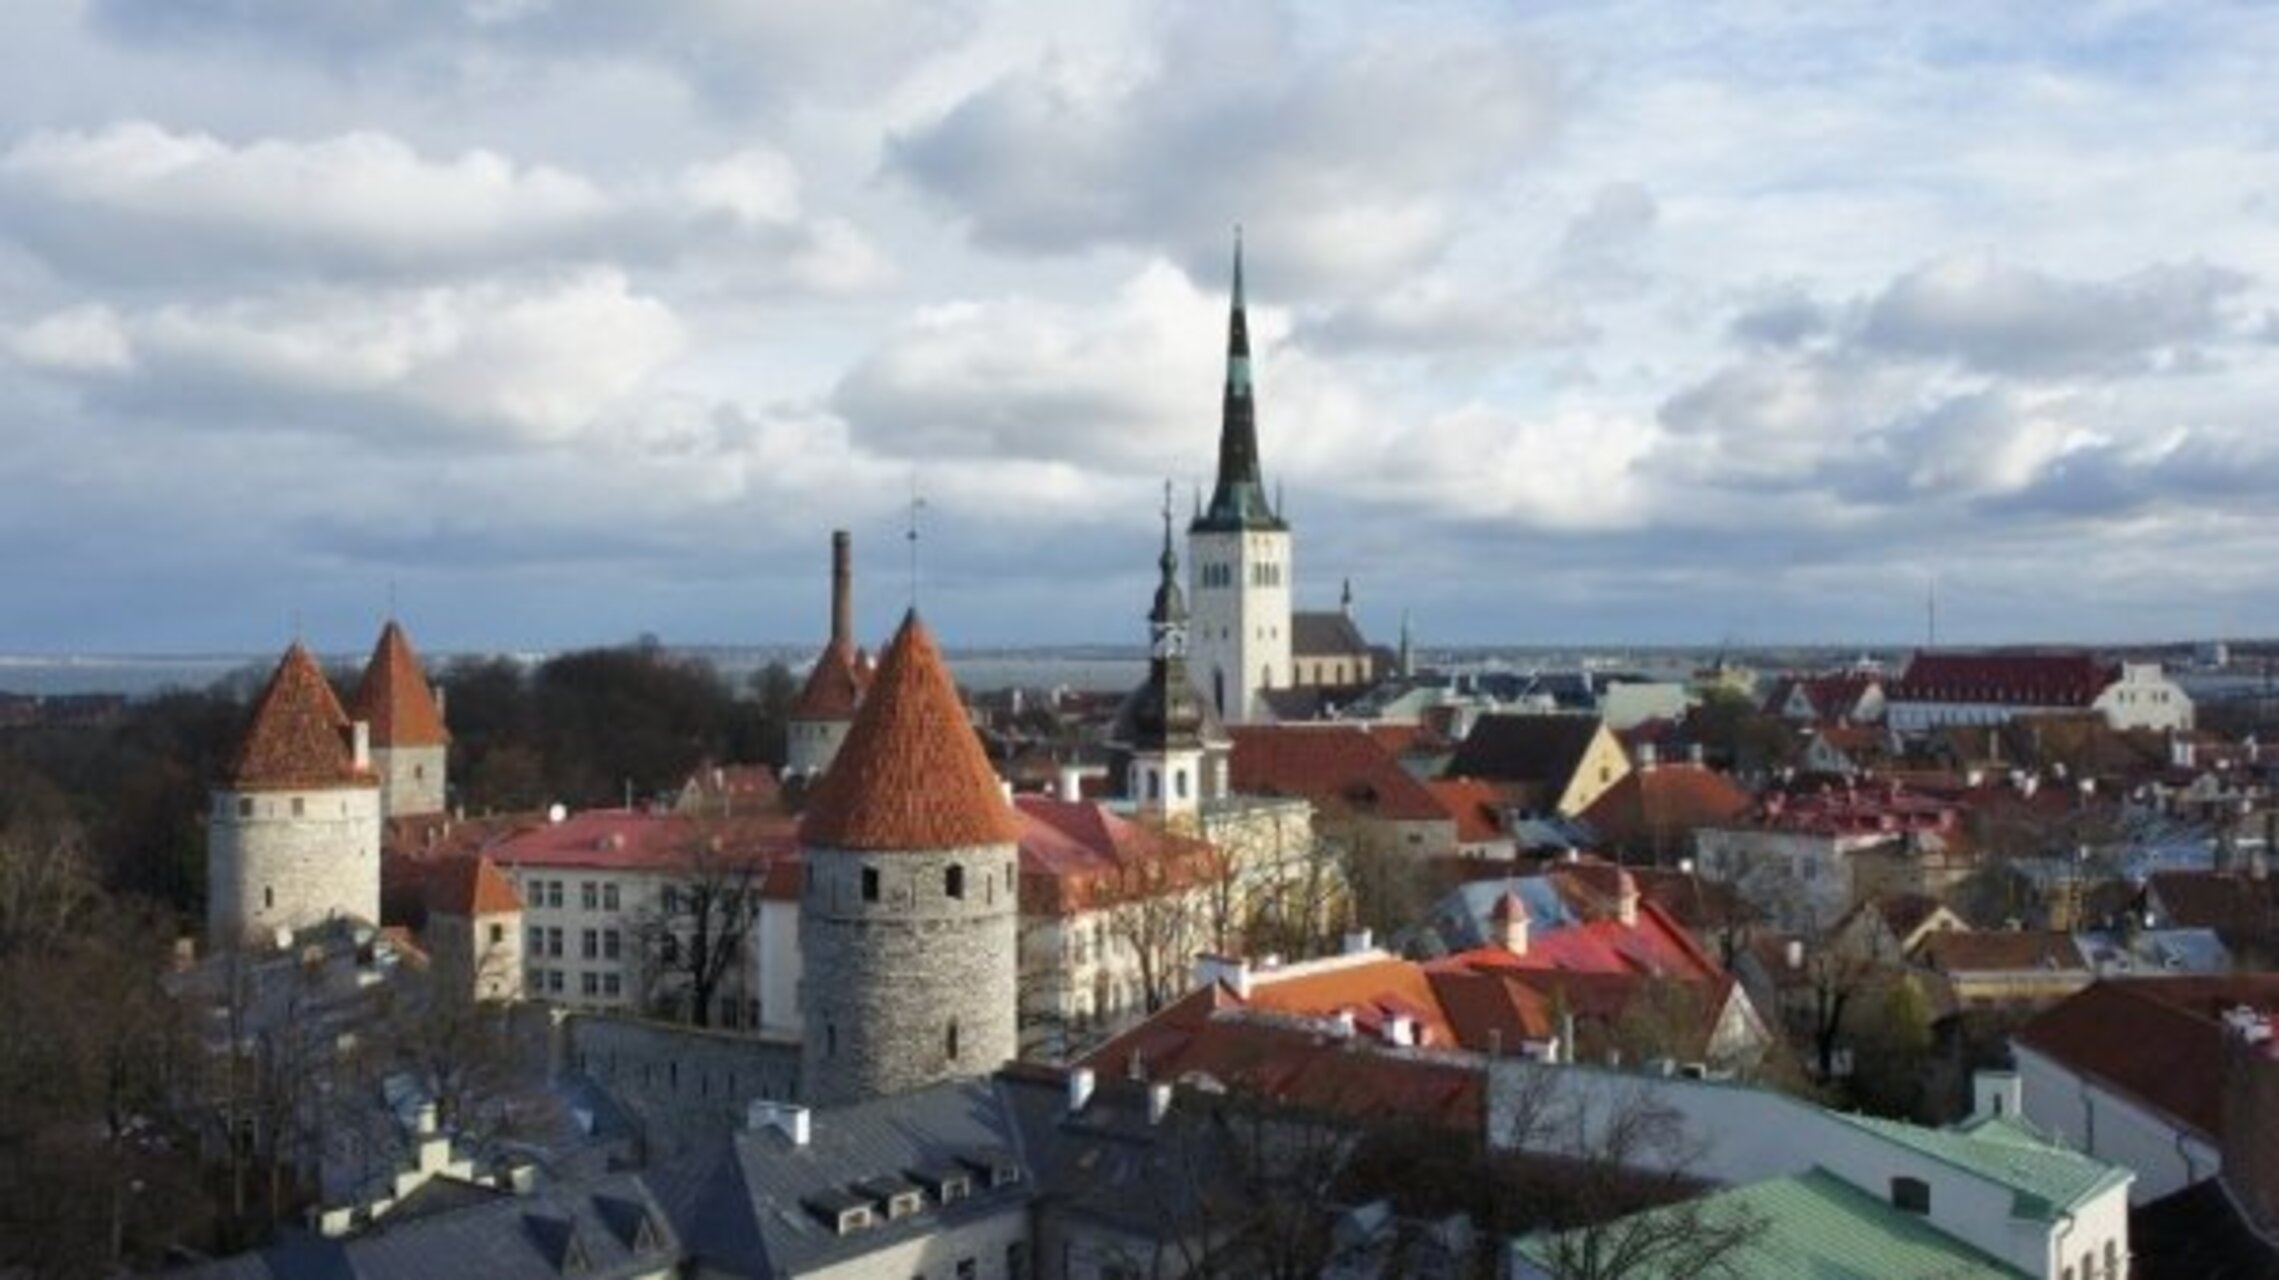 Эстония, Таллин, вид на старый город с холма Тоомпеа. Видны крепостные стены и церковь Олевисте - один из символов города.
http://ru.wikipedia.org/wiki/%D0%9E%D0%BB%D0%B5%D0%B2%D0%B8%D1%81%D1%82%D0%B5 v-tina